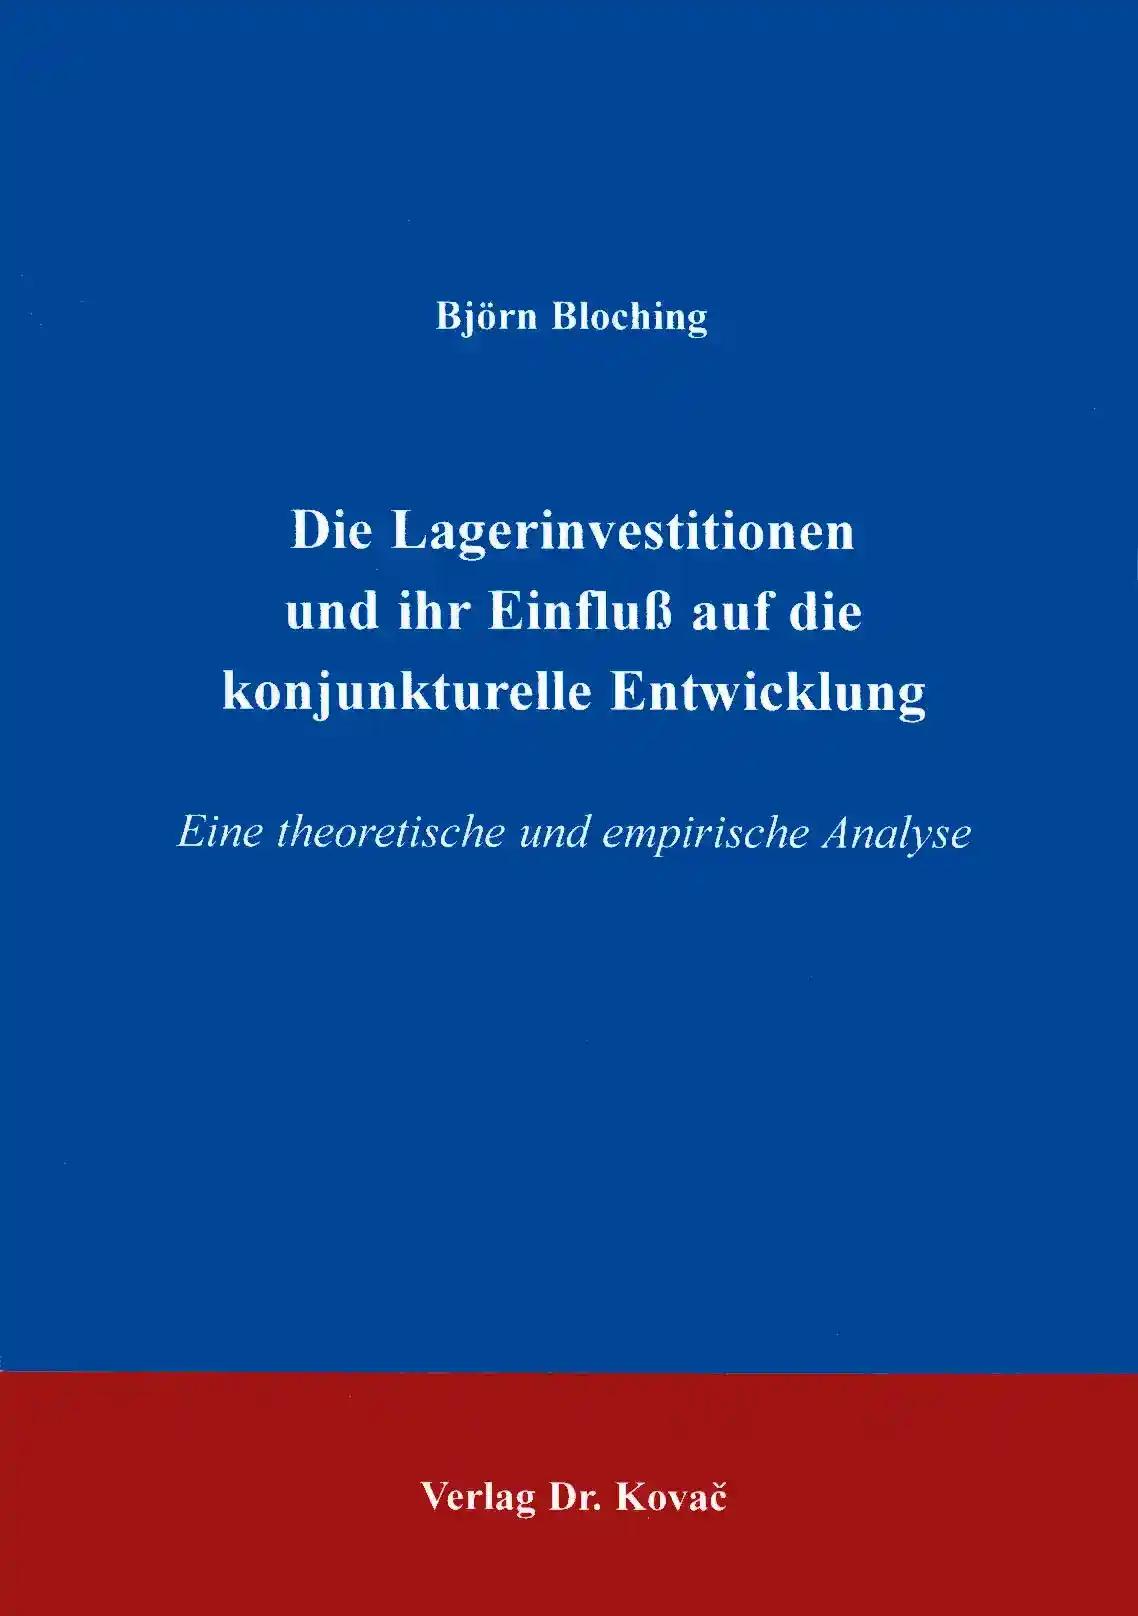 Die Lagerinvestitionen und ihr Einfluß auf die konjunkturelle Entwicklung, Eine theoretische und empirische Analyse - Björn Bloching